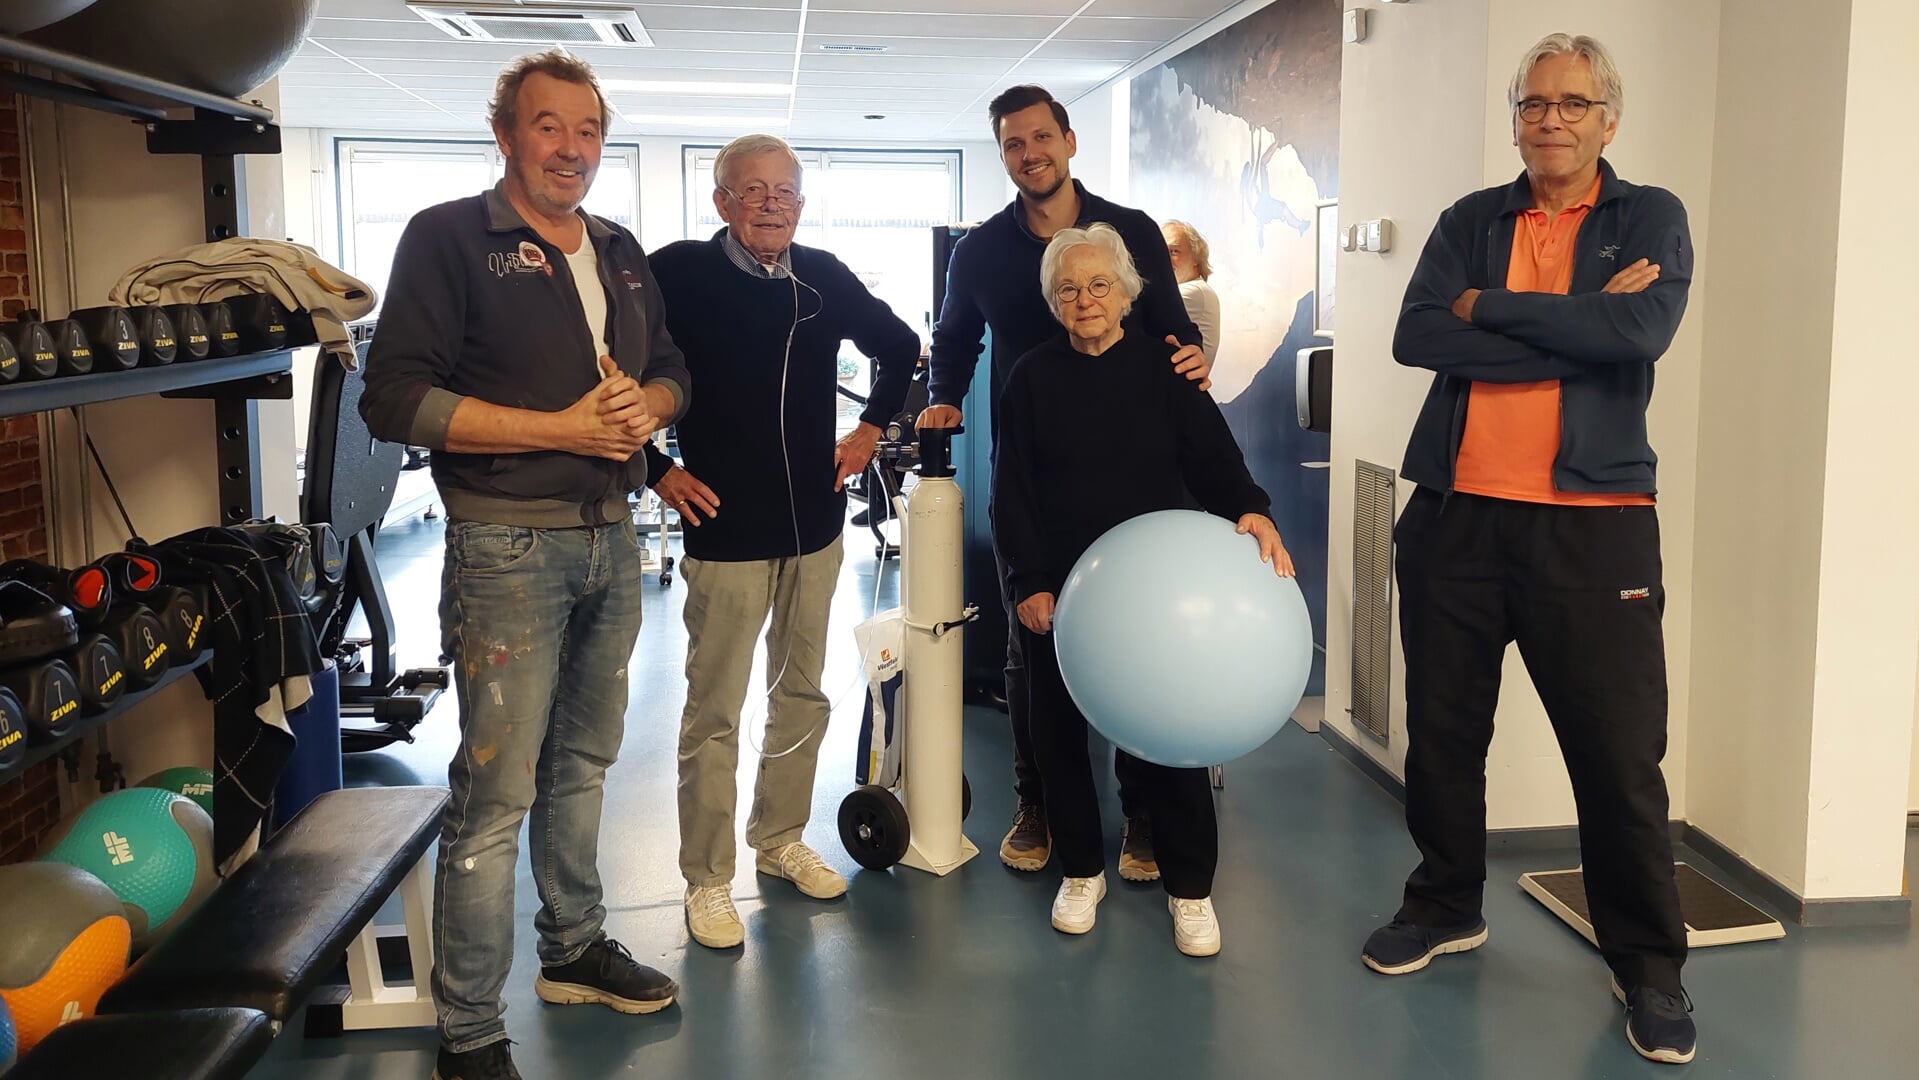 Fysiotherapeuten René Zegers, Sander Roverts en Ronald Kok met tussen hen in twee cliënten die ook blij zijn dat de praktijk weer is opgeknapt.